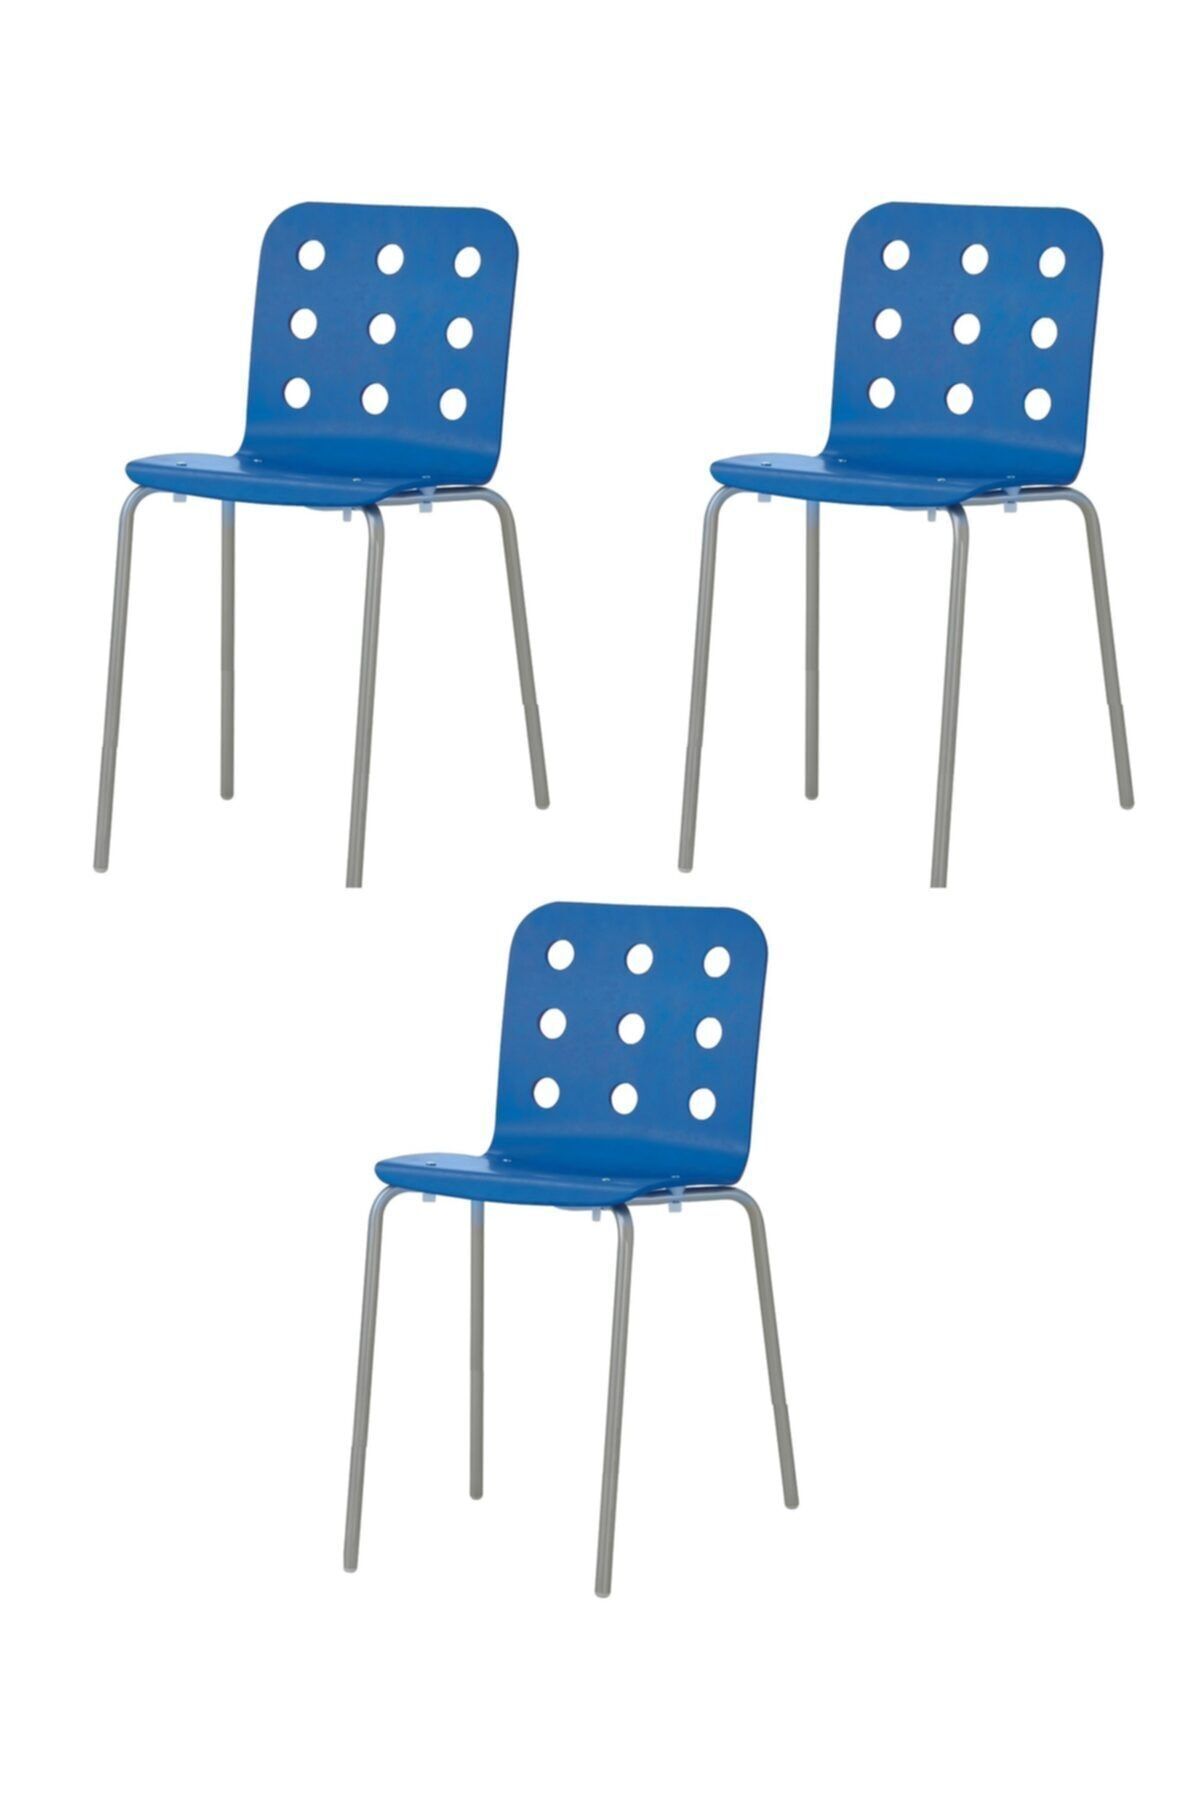 IKEA Dekoratif 3 Adet Jules Bar Sandalyesi (MAVİ RENKLİ) (OTURMA YÜKSEKLİĞİ 55 CM)